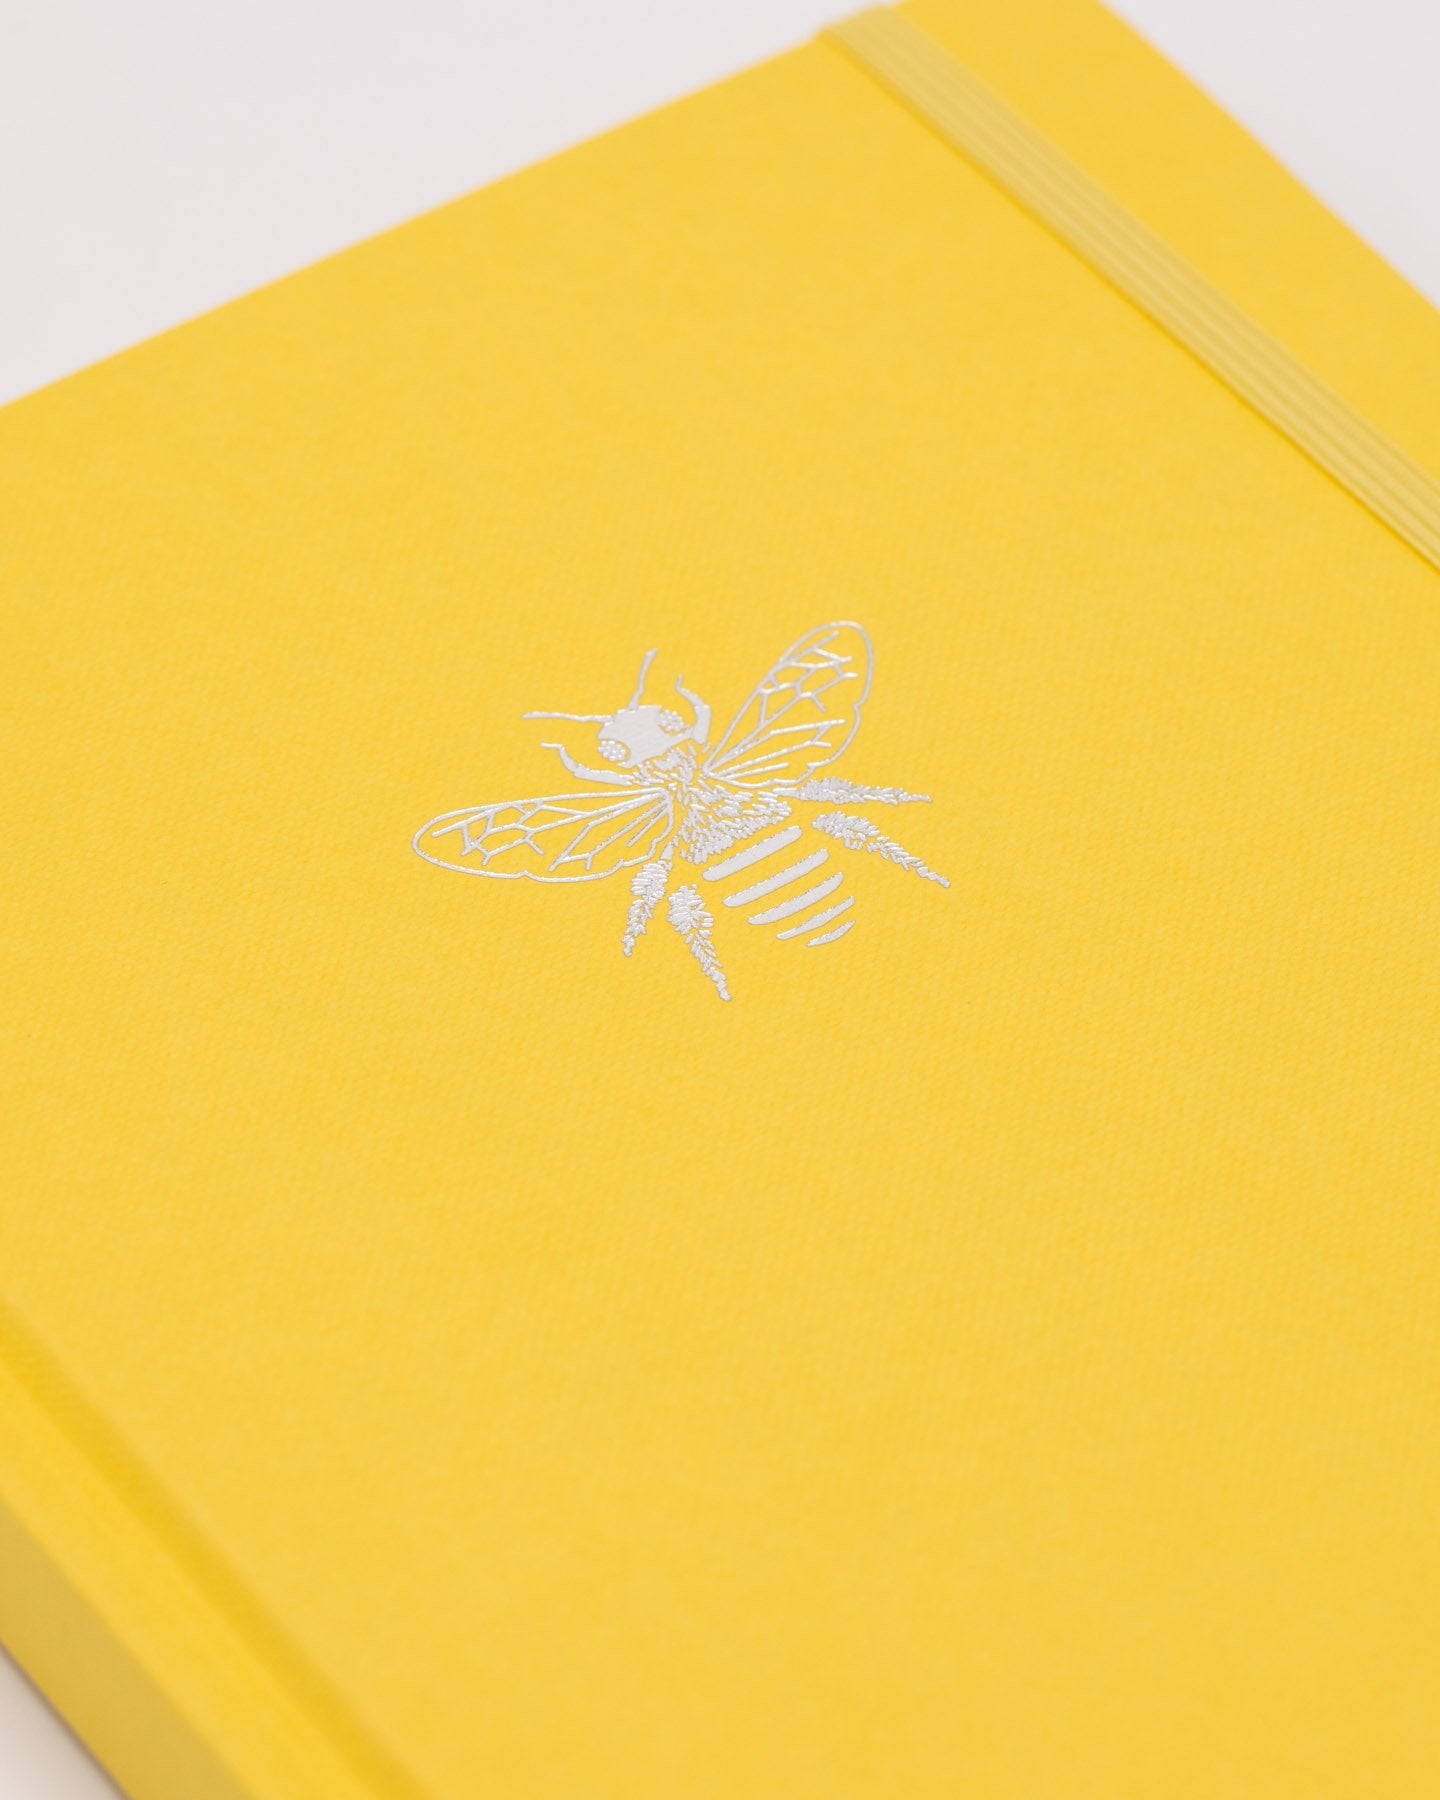 Honey Bee A5 Hardcover - Sonnenschein